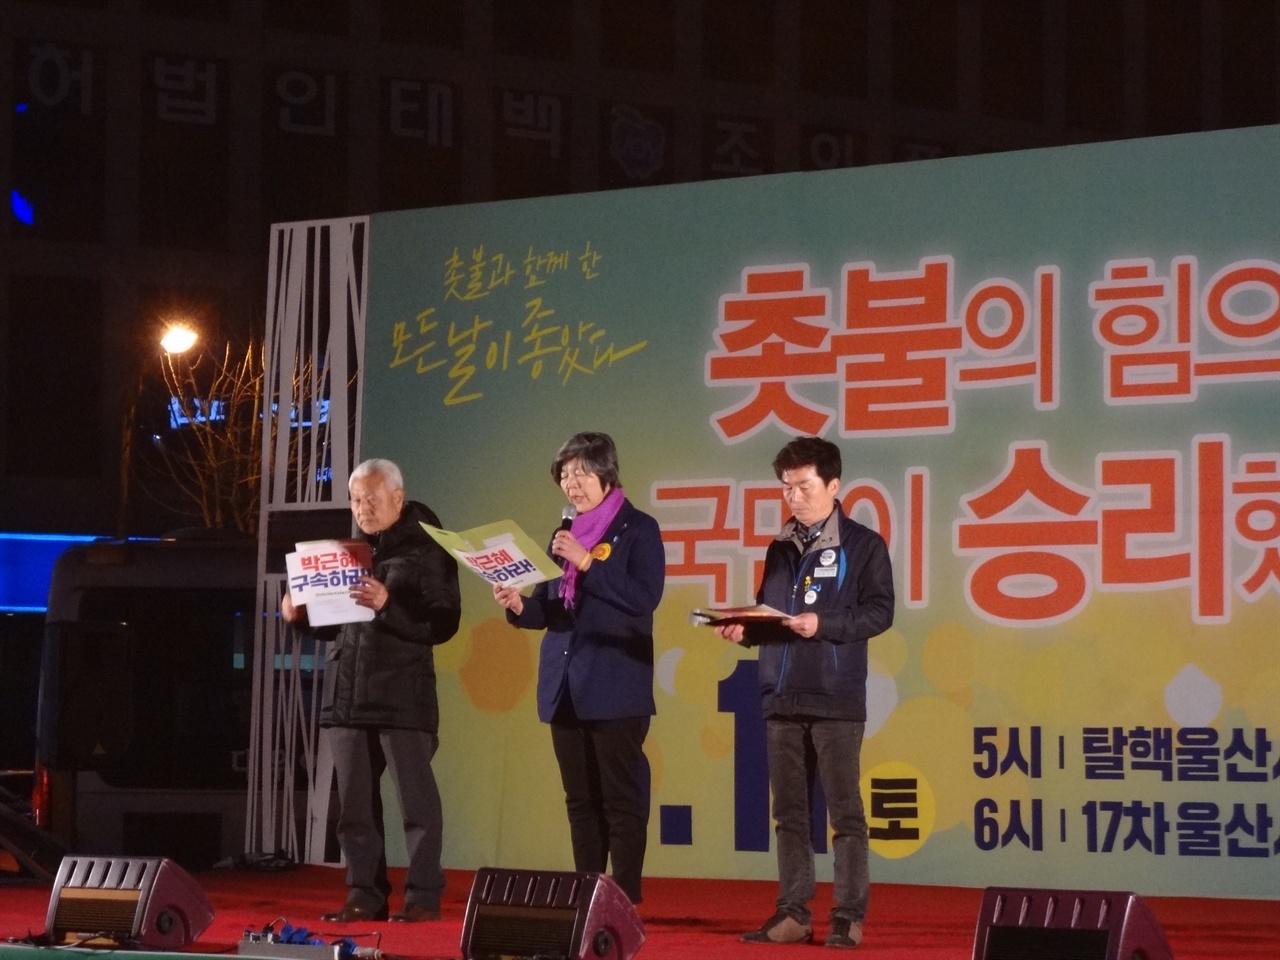 <박근혜 정권퇴진 울산시민행동> 3명의 대표자들이 무대위에 등장해서 발언을 하였다.